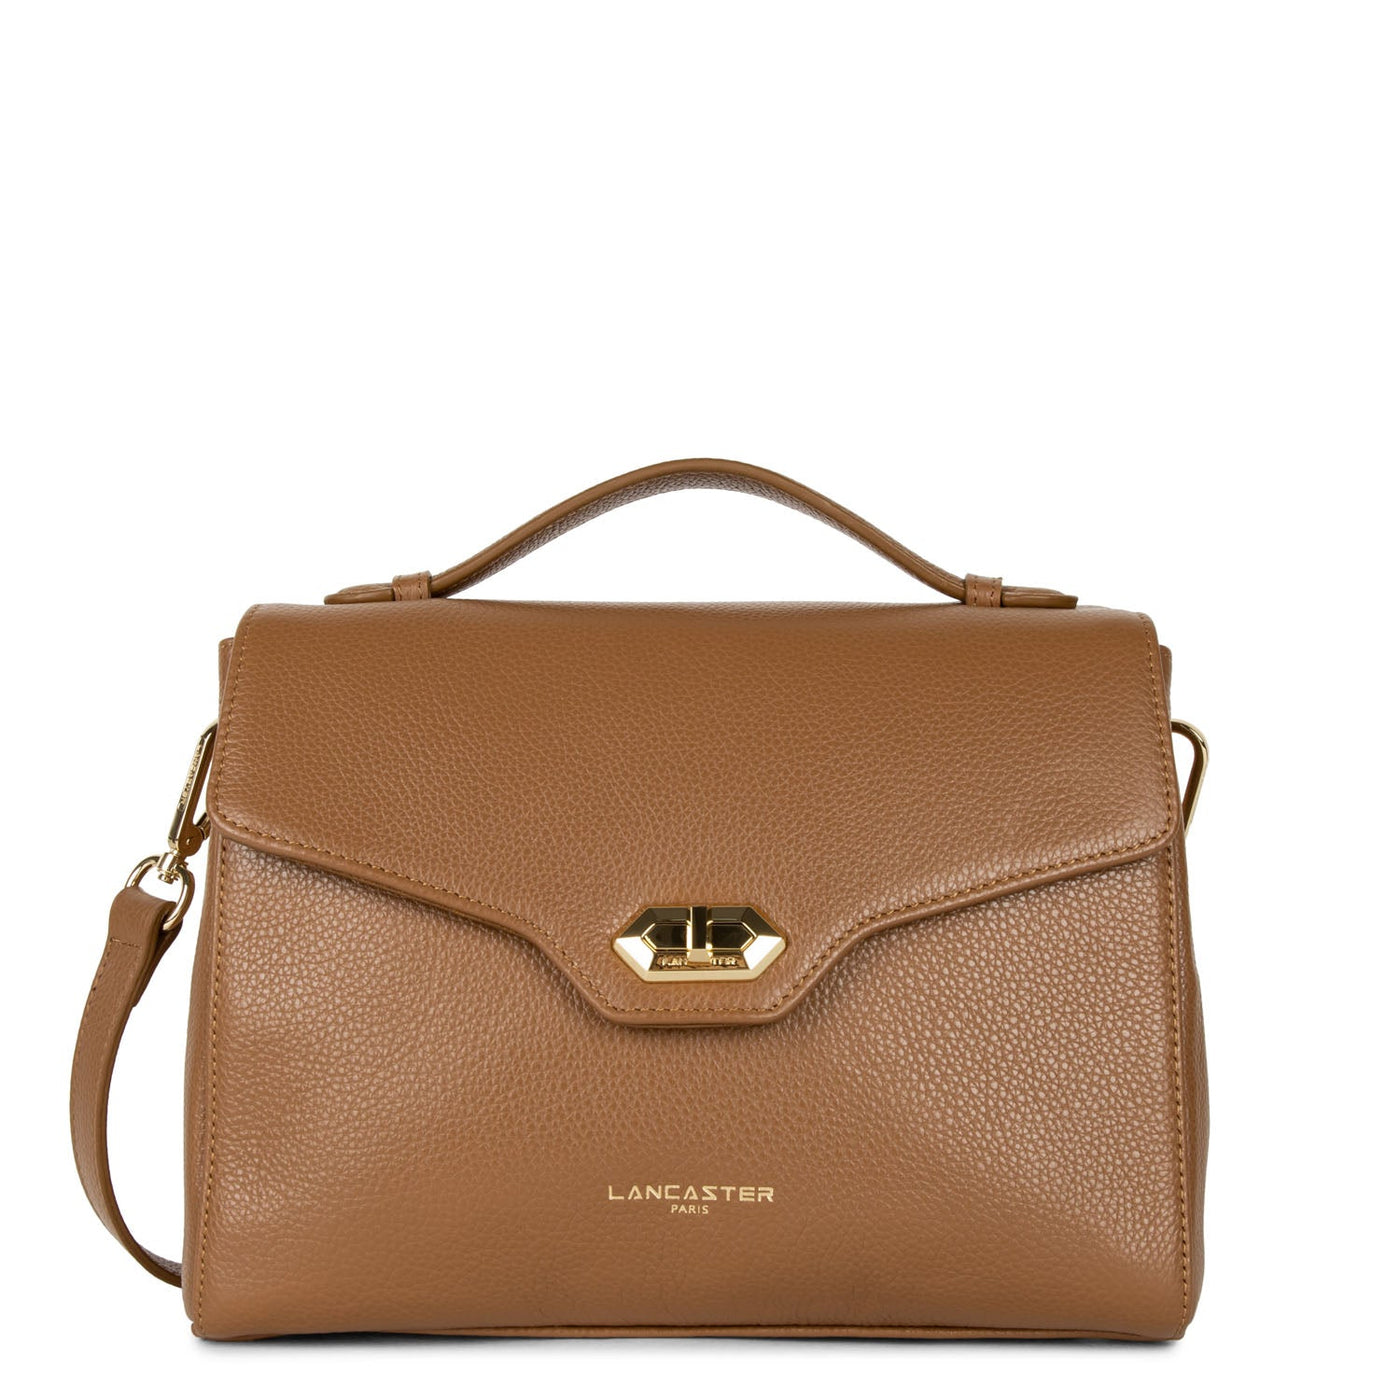 handbag - foulonné milano #couleur_camel